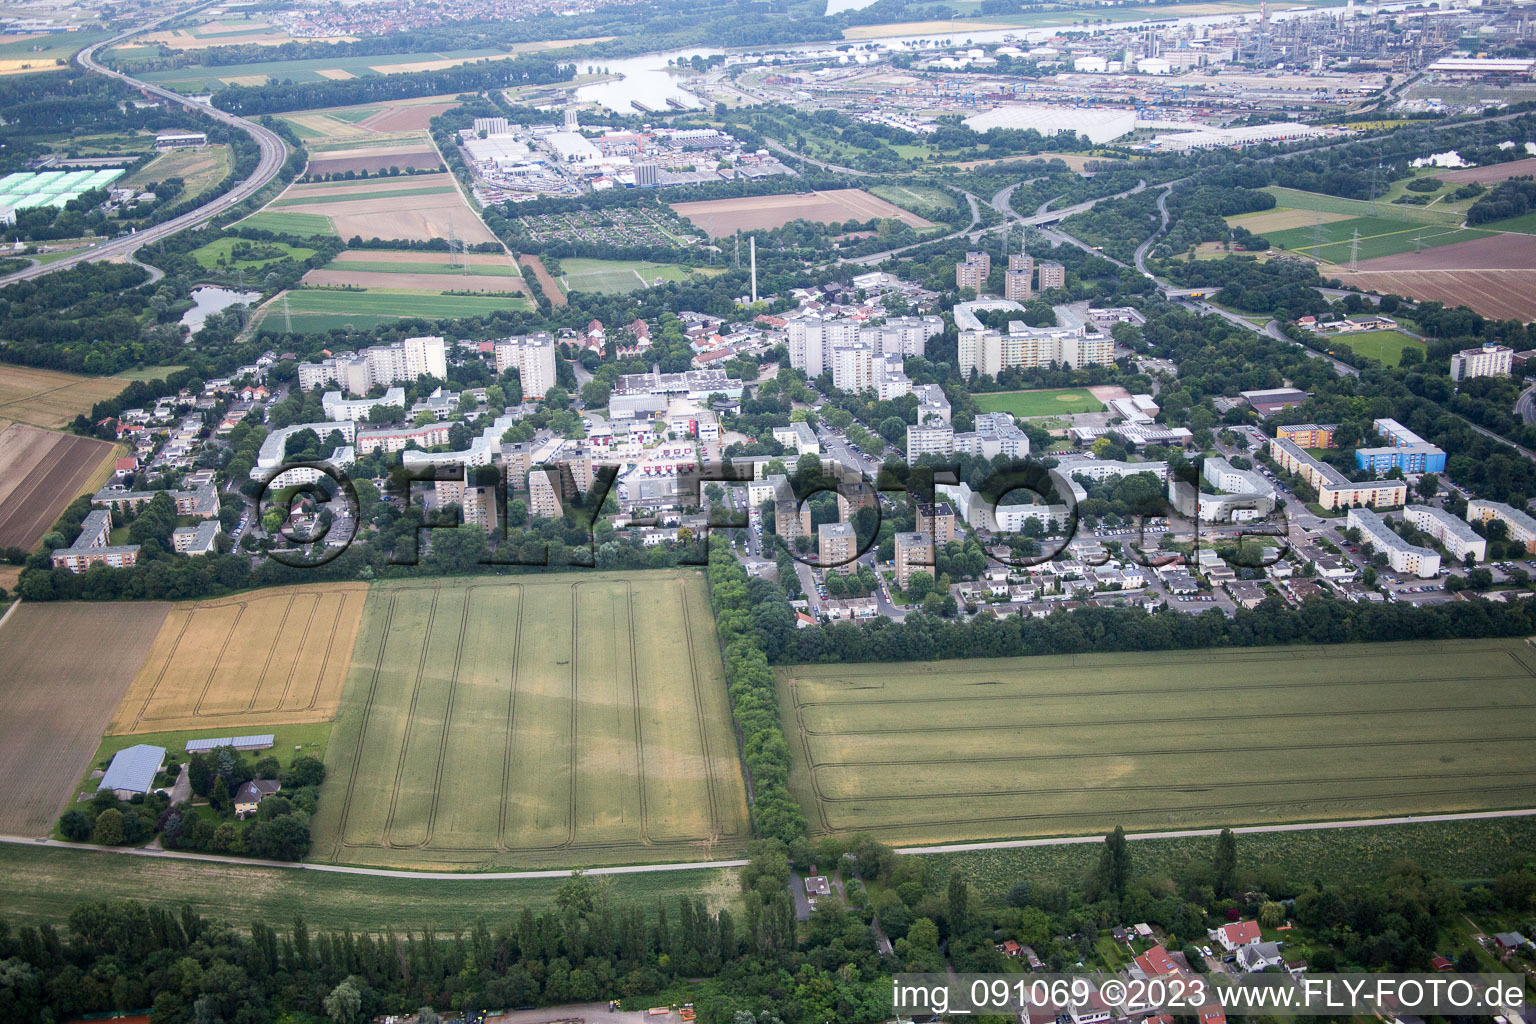 Quartier Pfingstweide in Ludwigshafen am Rhein dans le département Rhénanie-Palatinat, Allemagne hors des airs